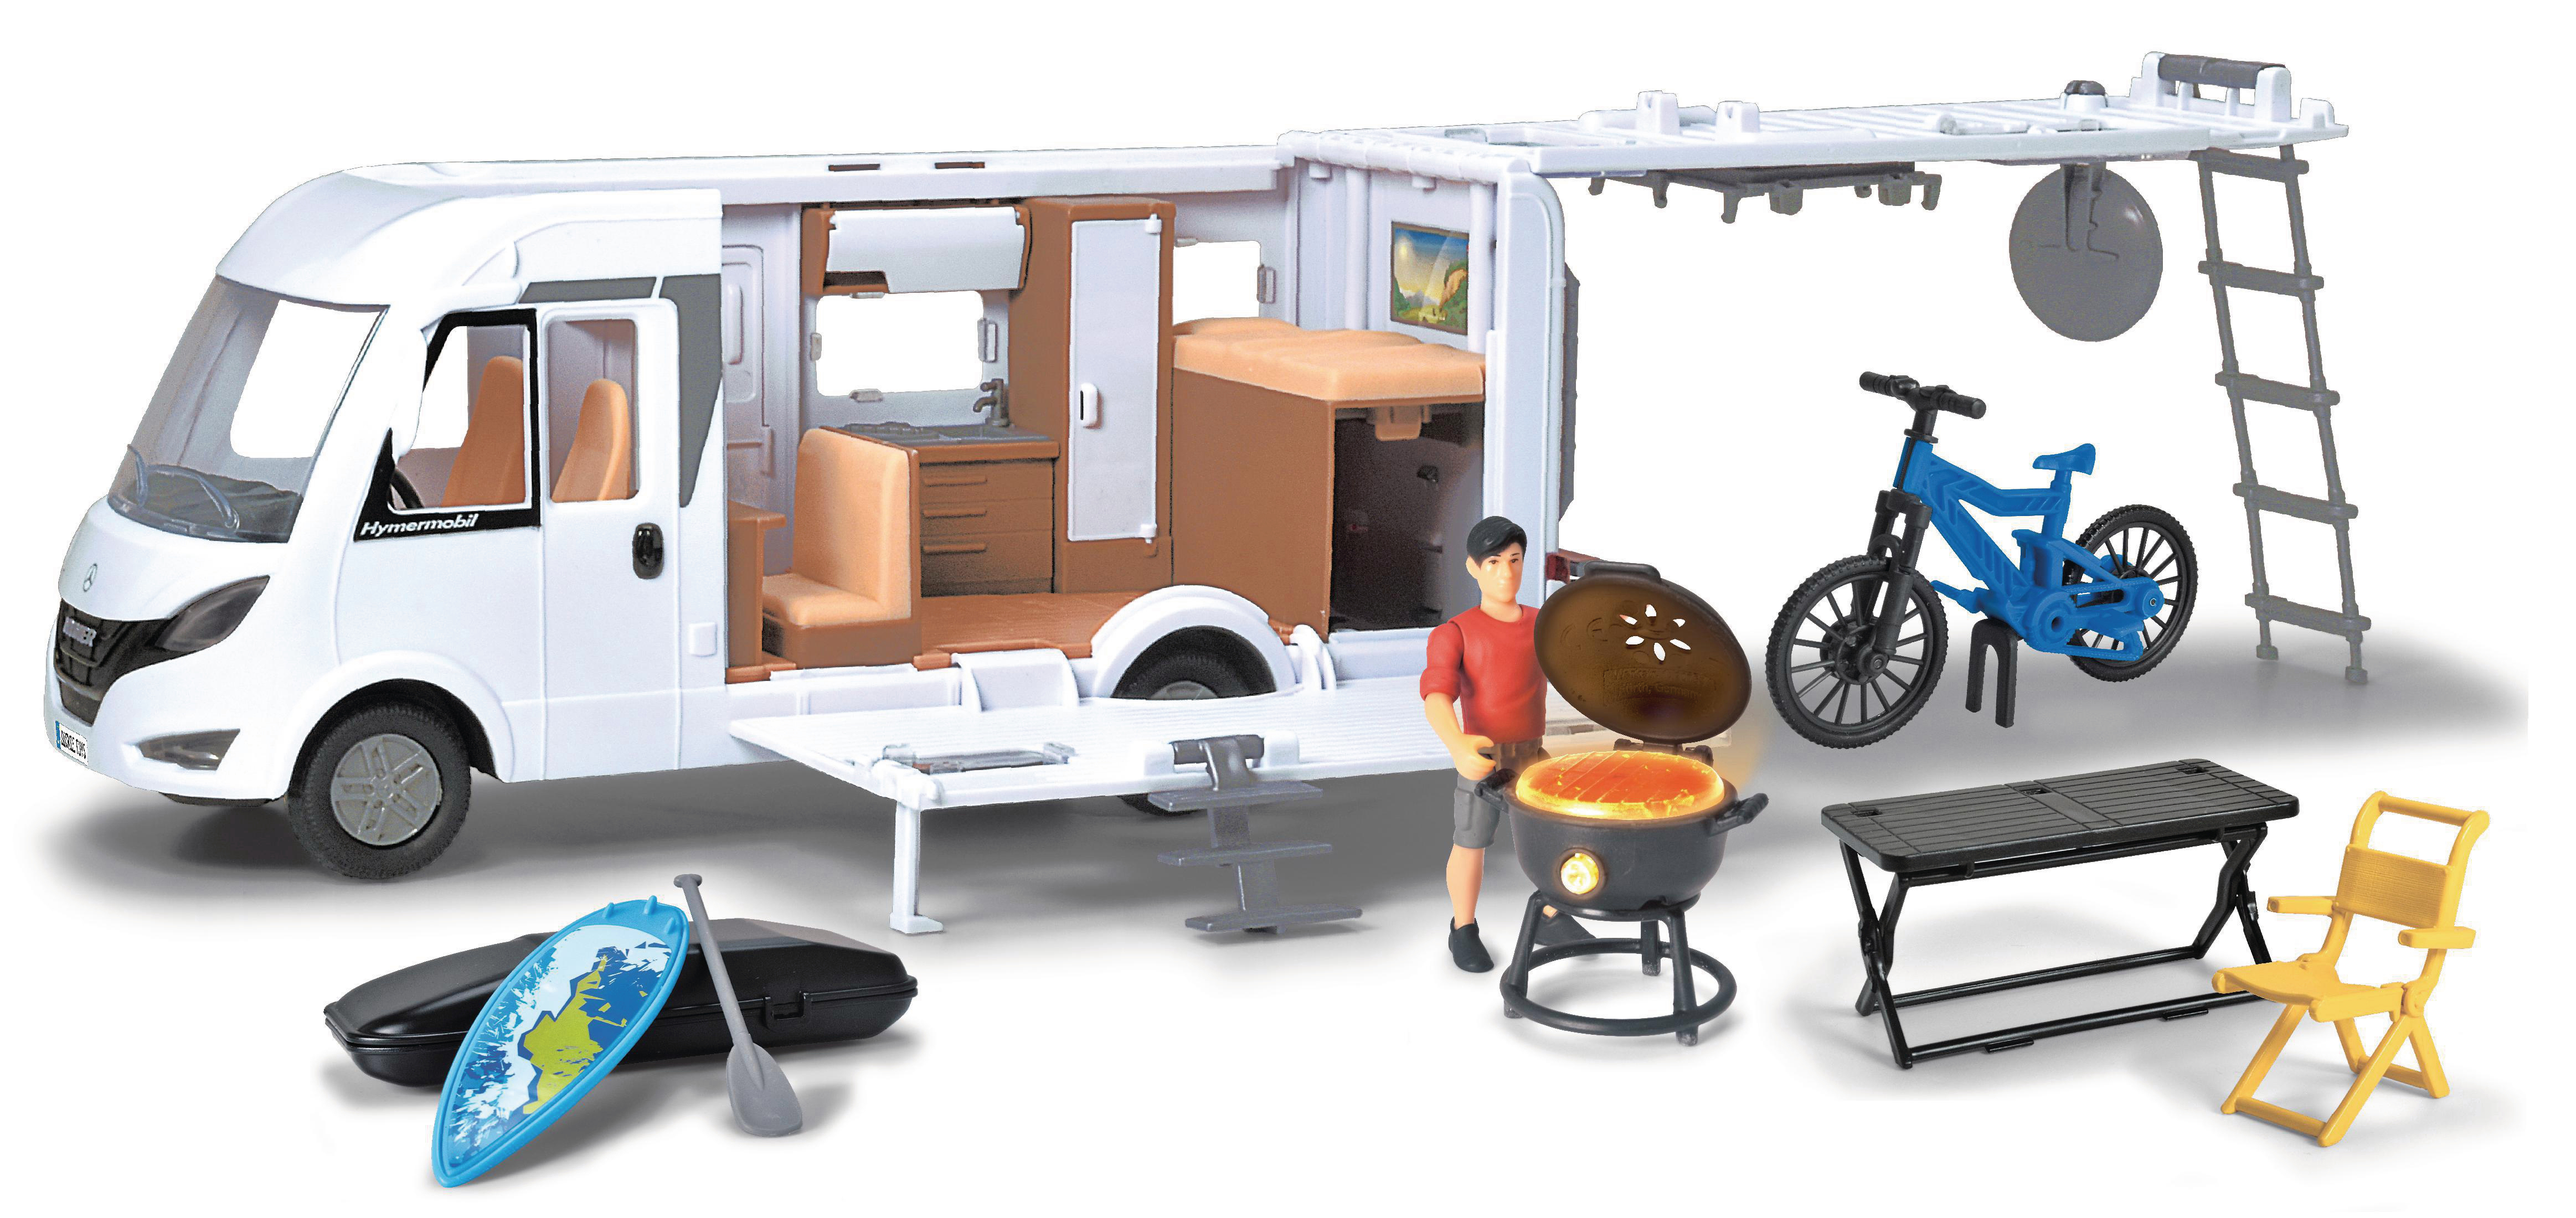 DICKIE-TOYS Camper Set, Hymer Weiß Interieur Van Spielzeugauto mit Camping